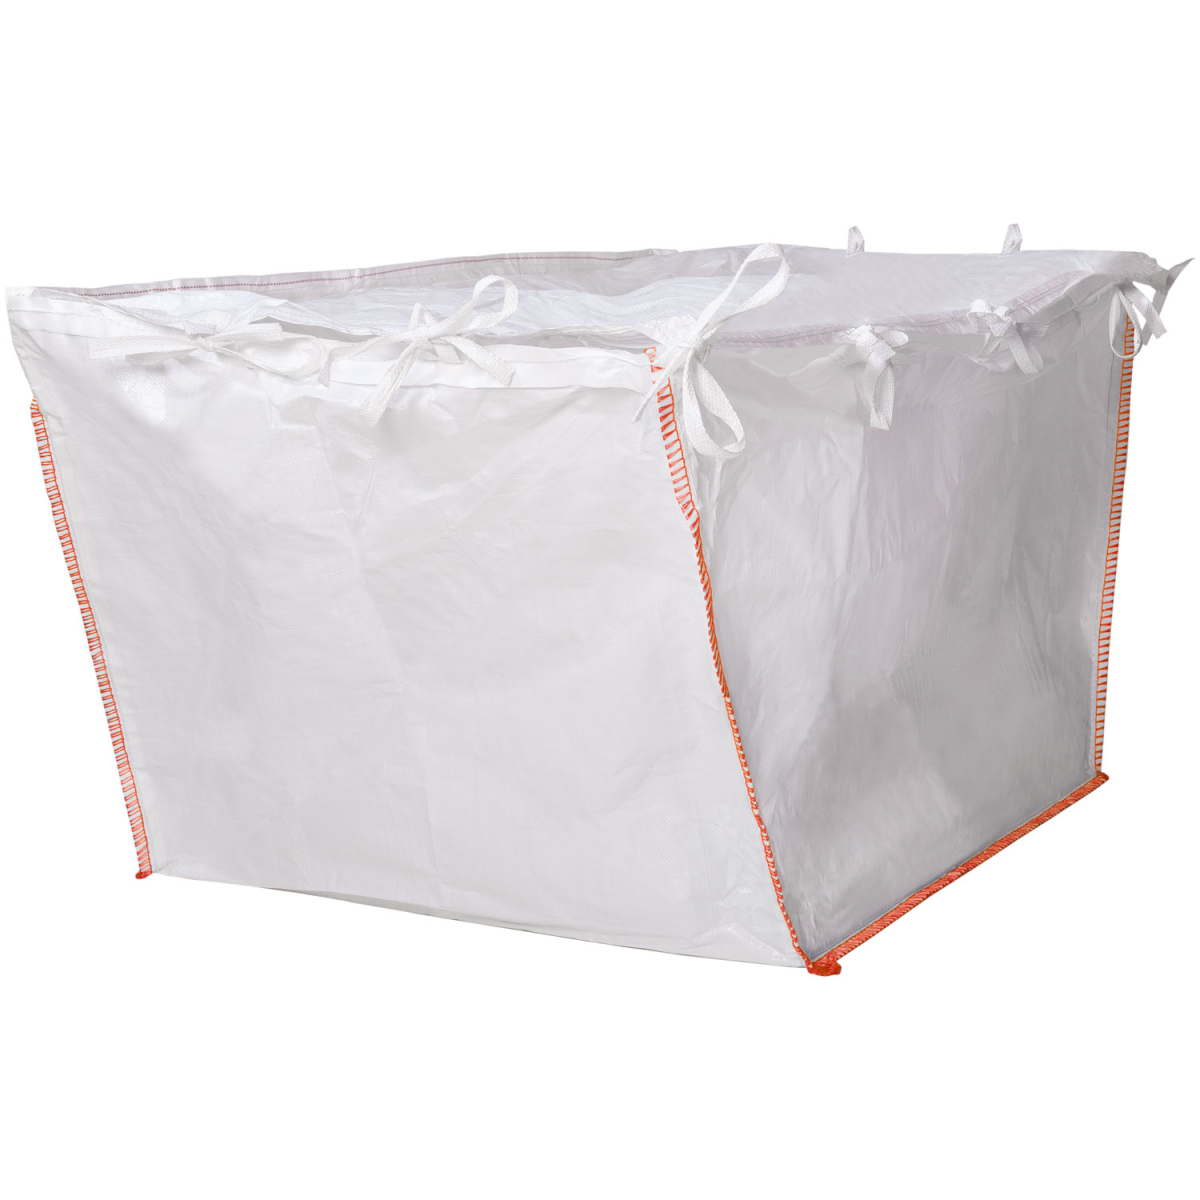 weißer containerbag mit orangen naehten 